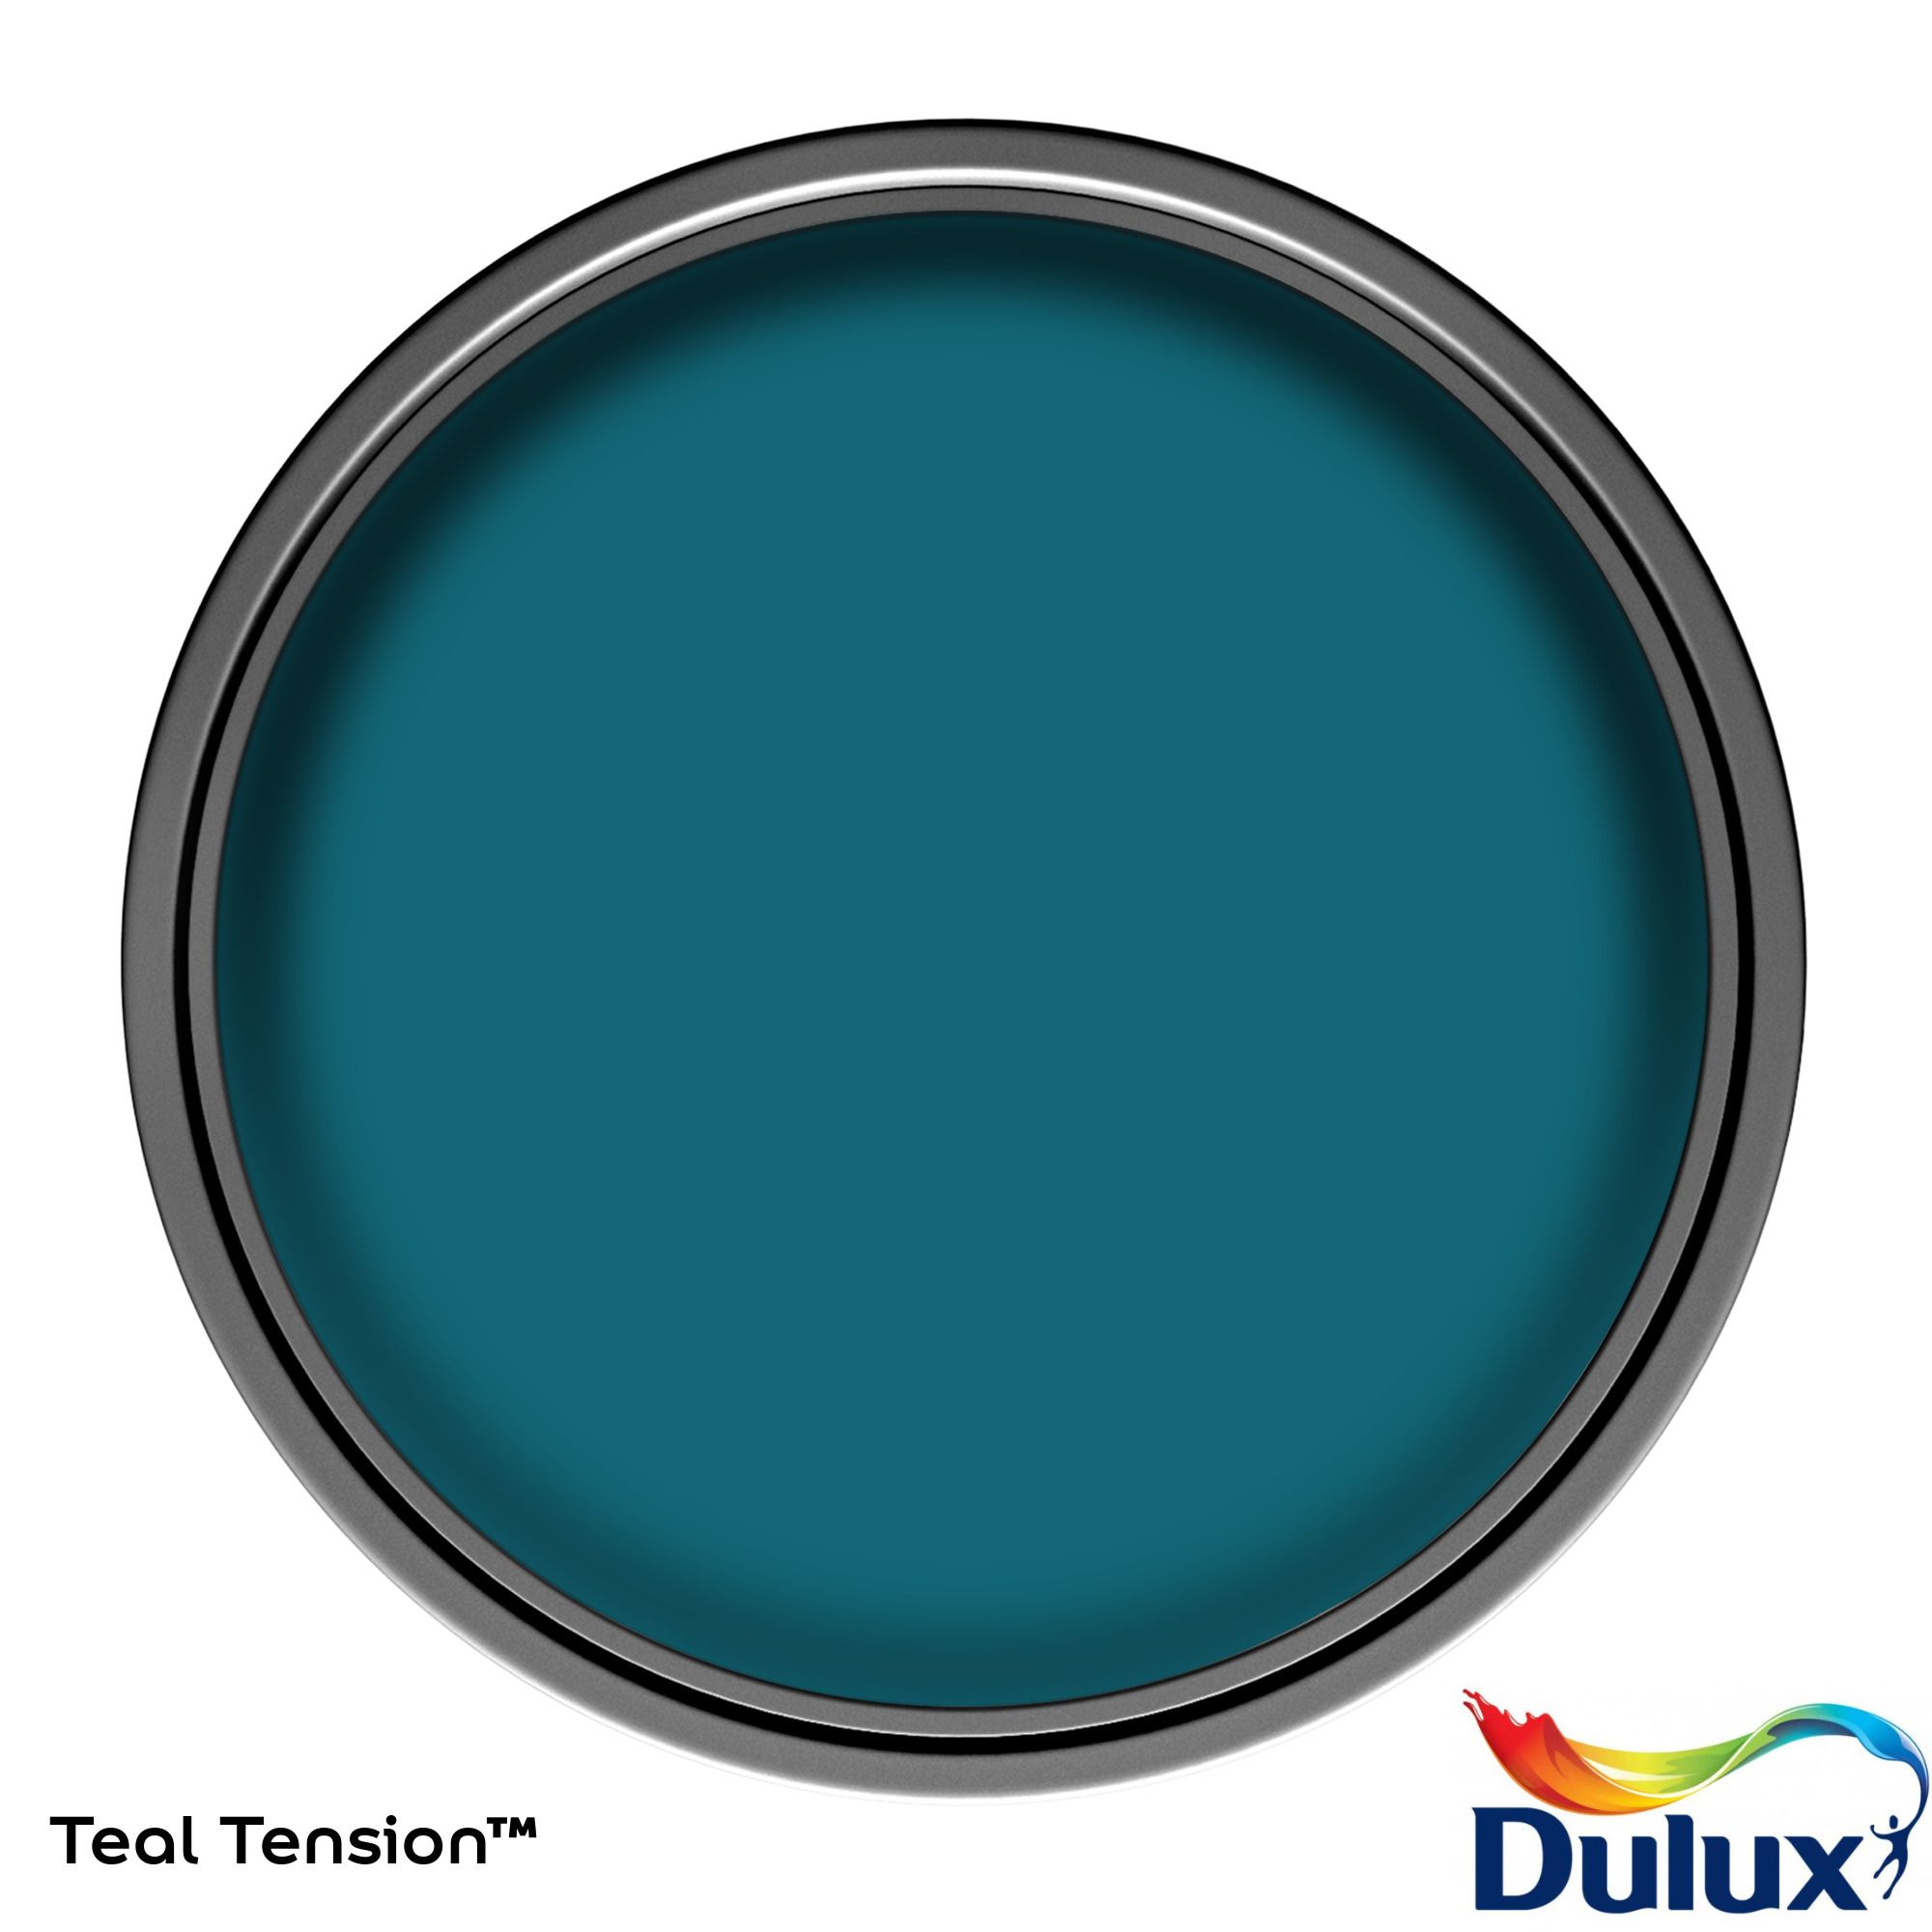 Dulux One coat Teal tension Matt Emulsion paint, 1.25L